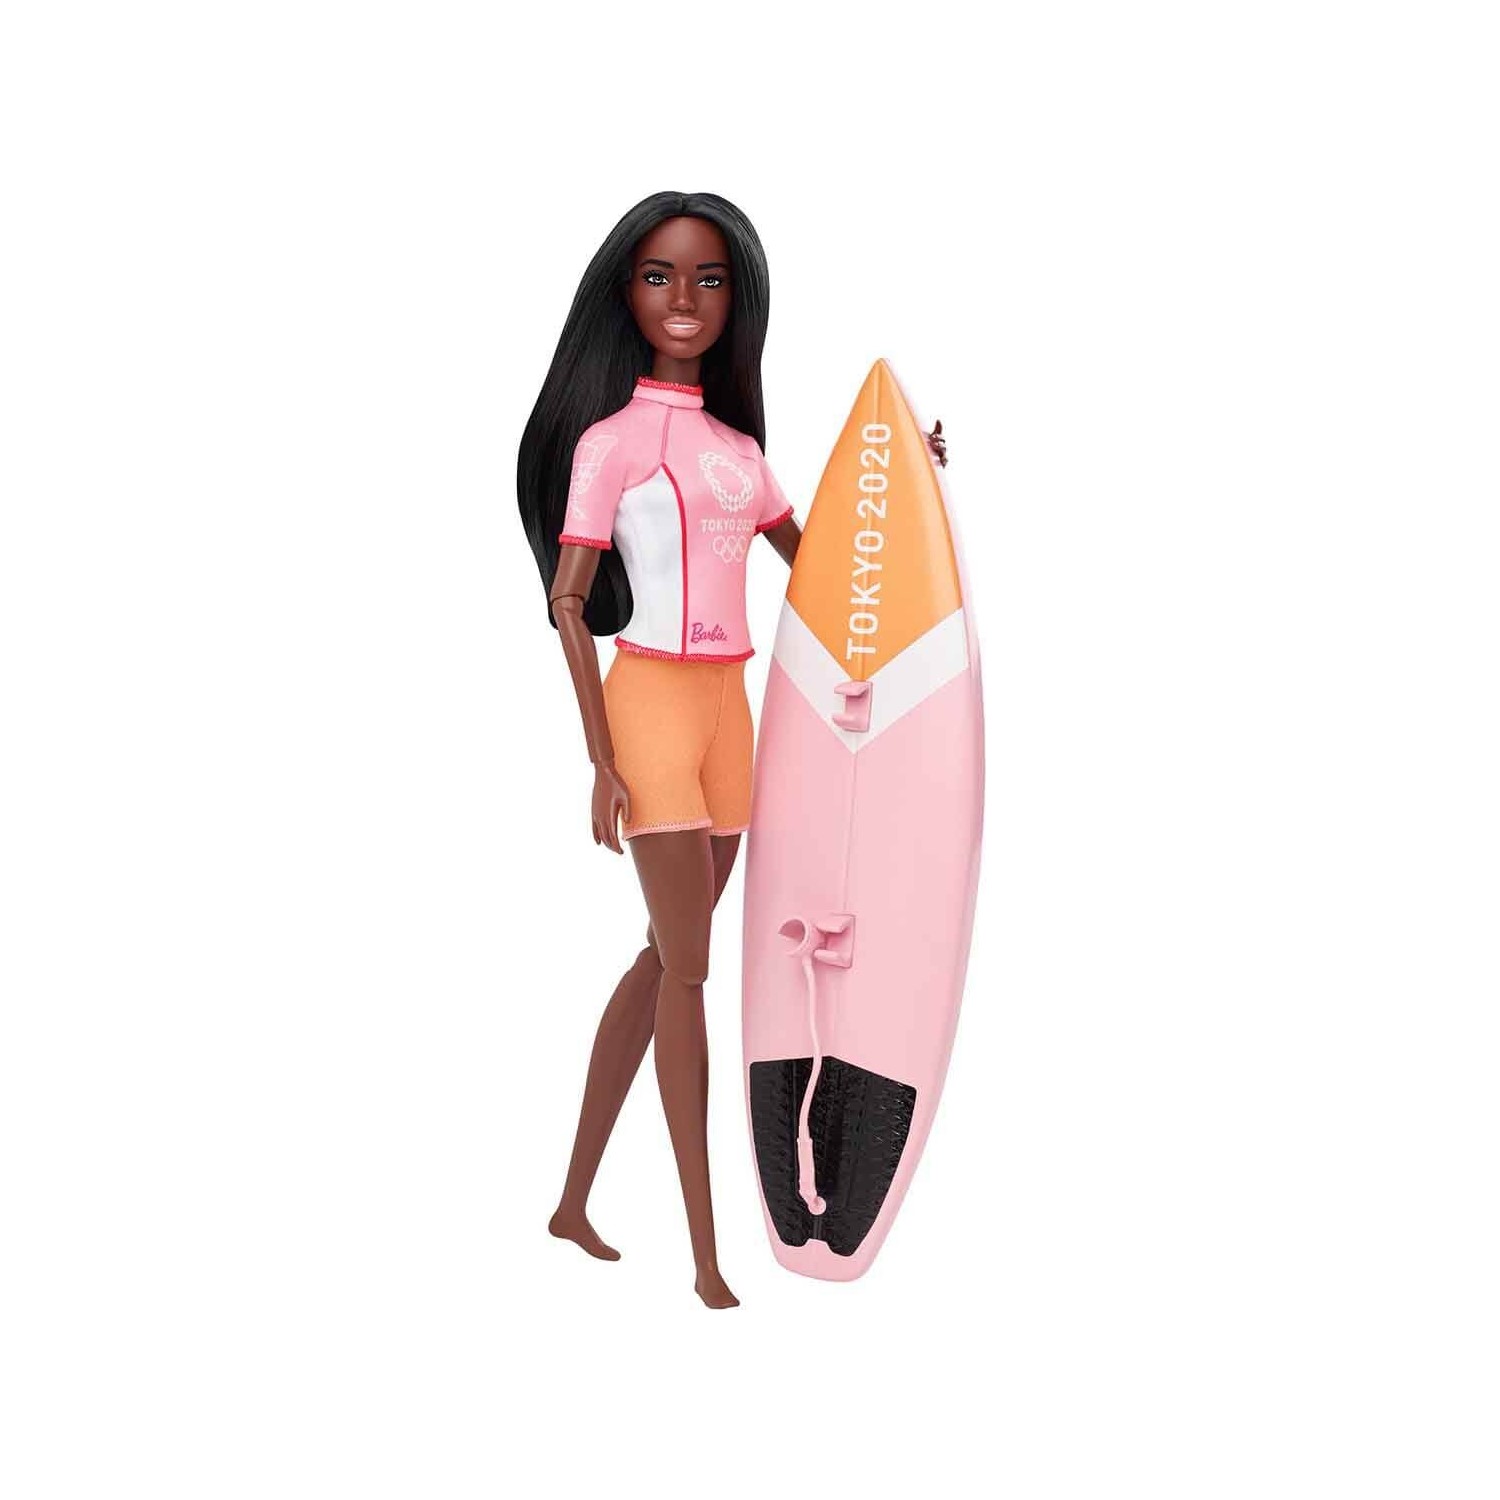 Кукла Barbie на серфинге GJL73 кукла barbie олимпийская спортсменка gjl73 скейтбординг